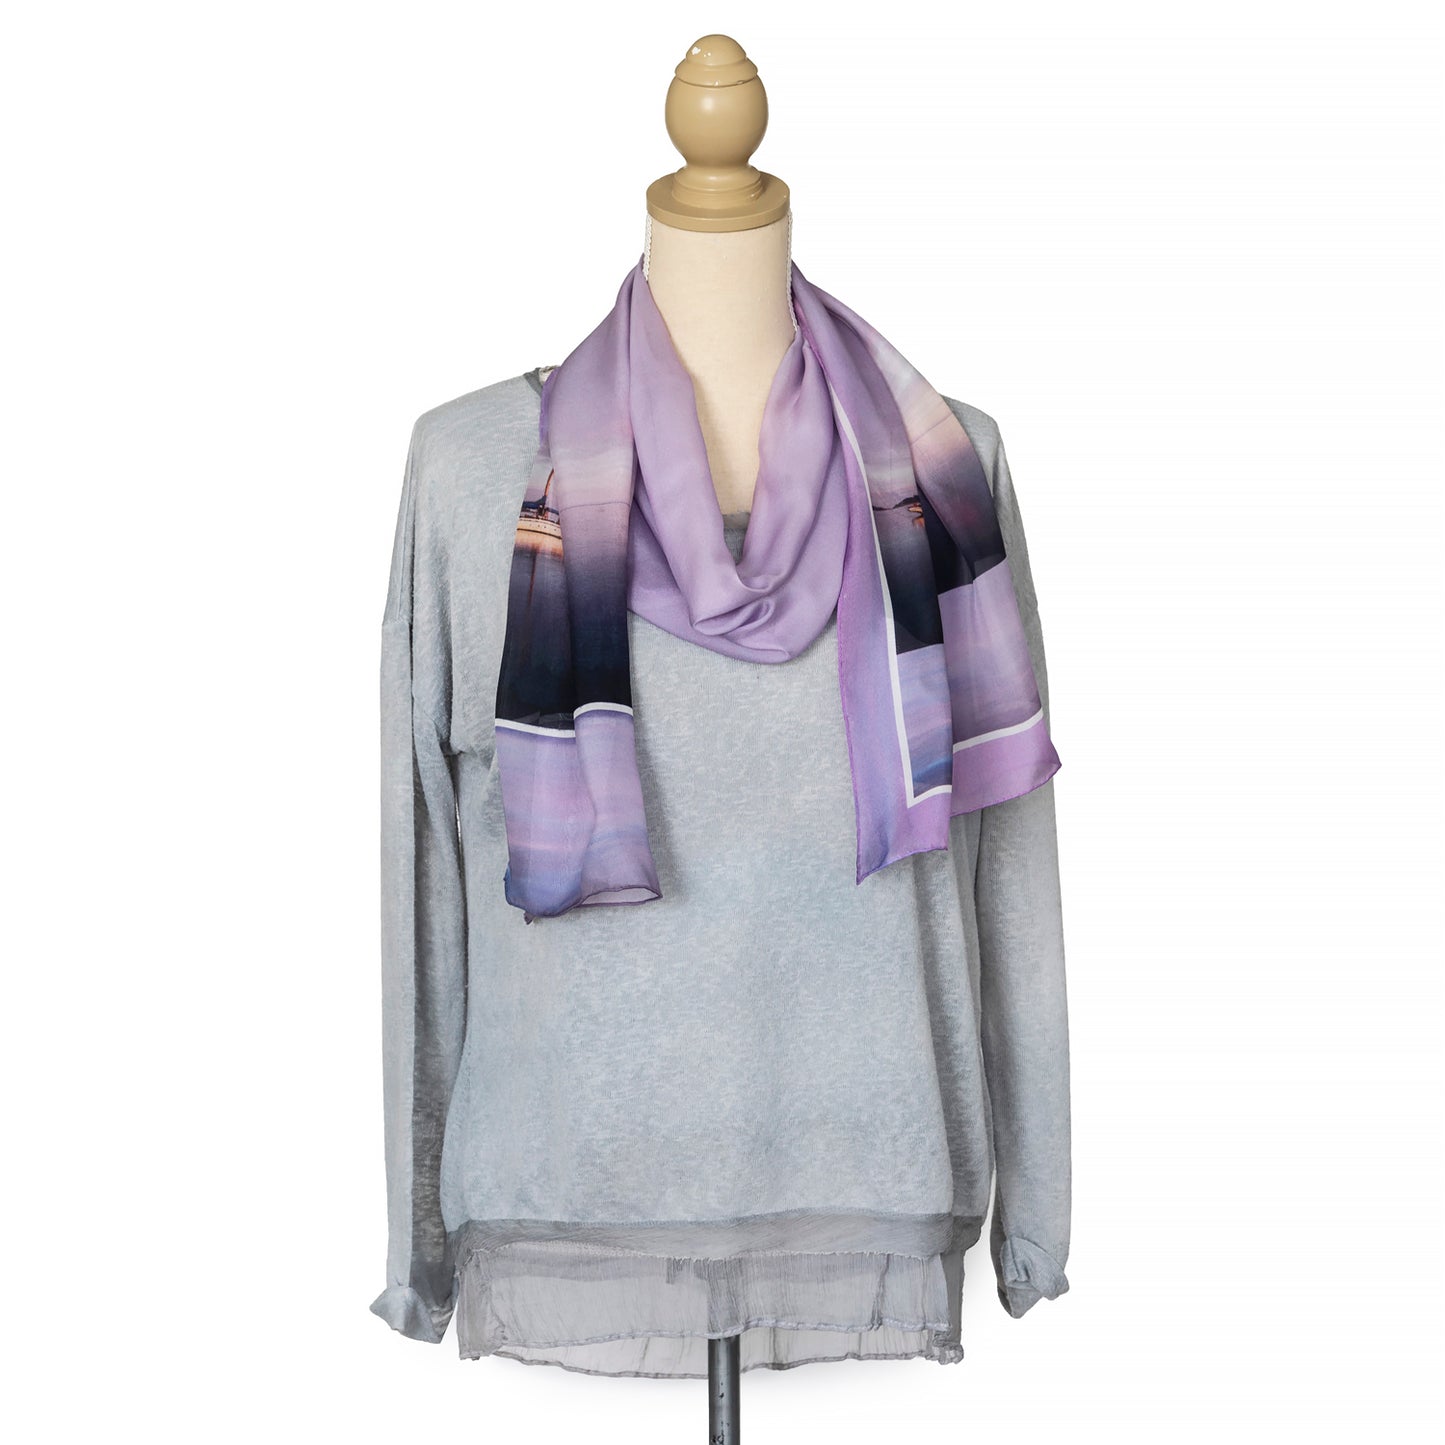 seaspray silk chiffon scarf by seahorse silks with grey top